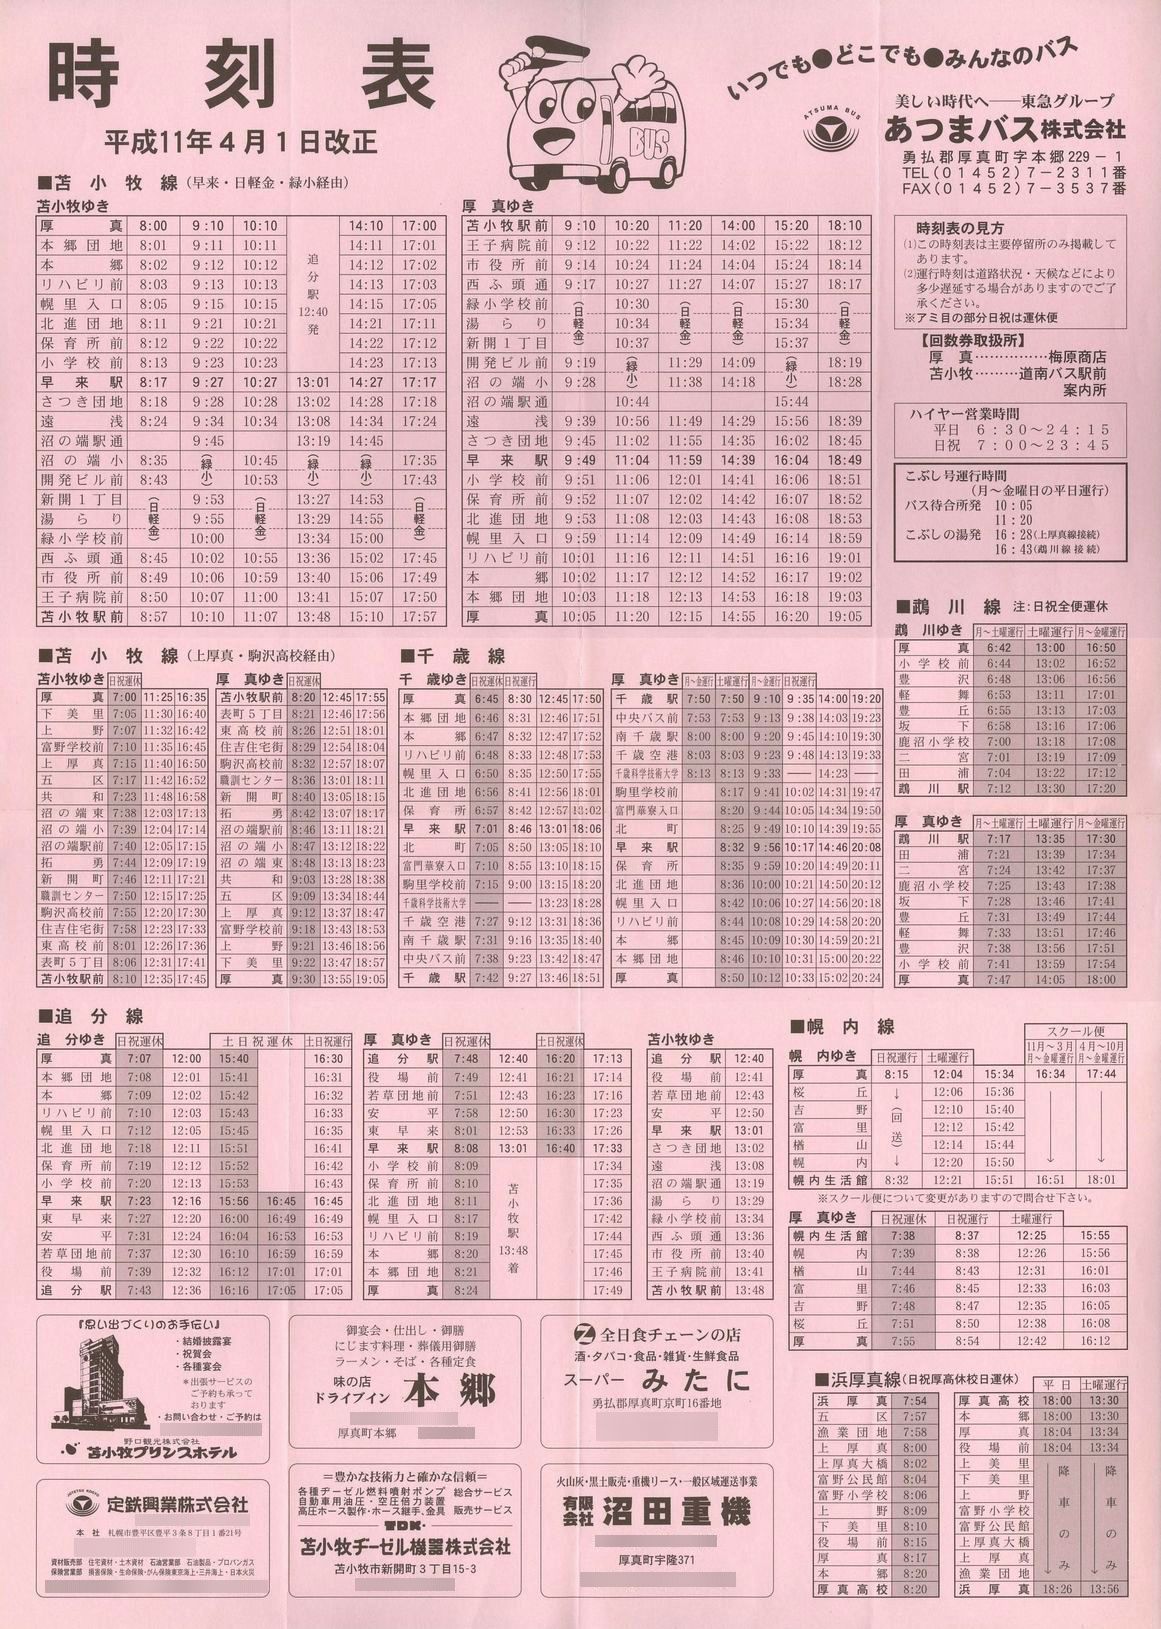 1999-04-01改正_あつまバス_時刻表